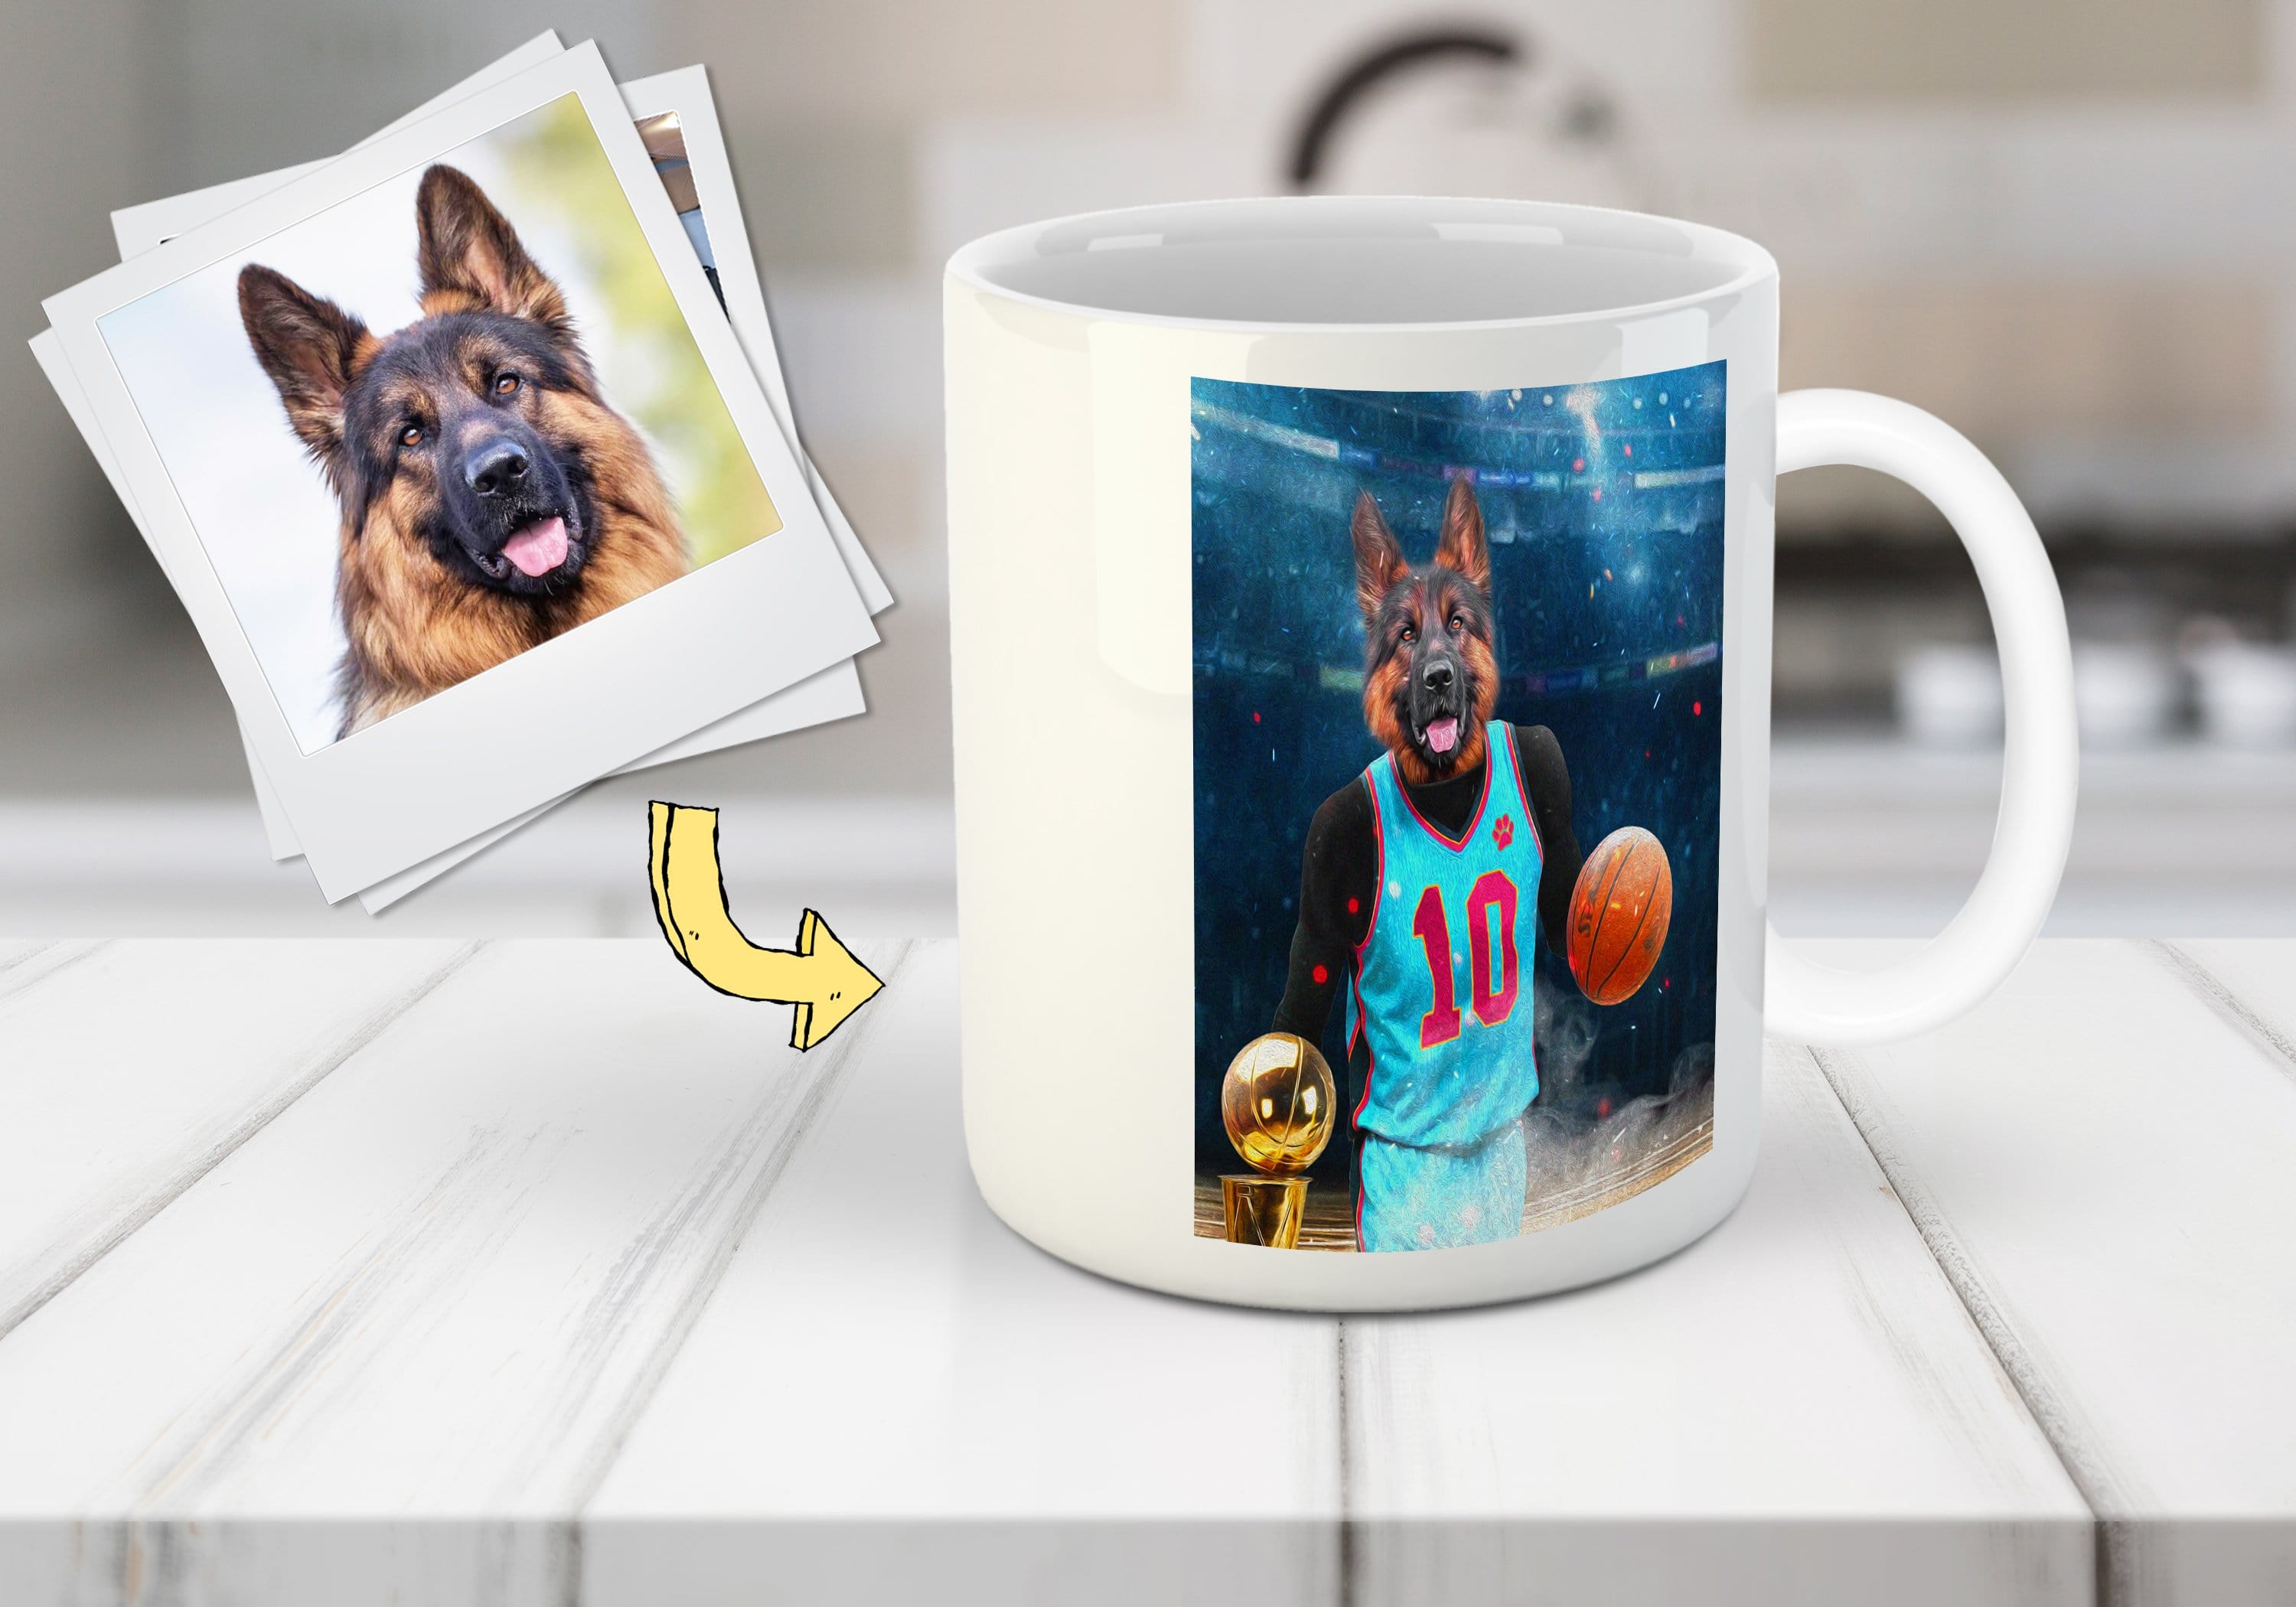 &#39;The Basketball Player&#39; Personalized Pet Mug